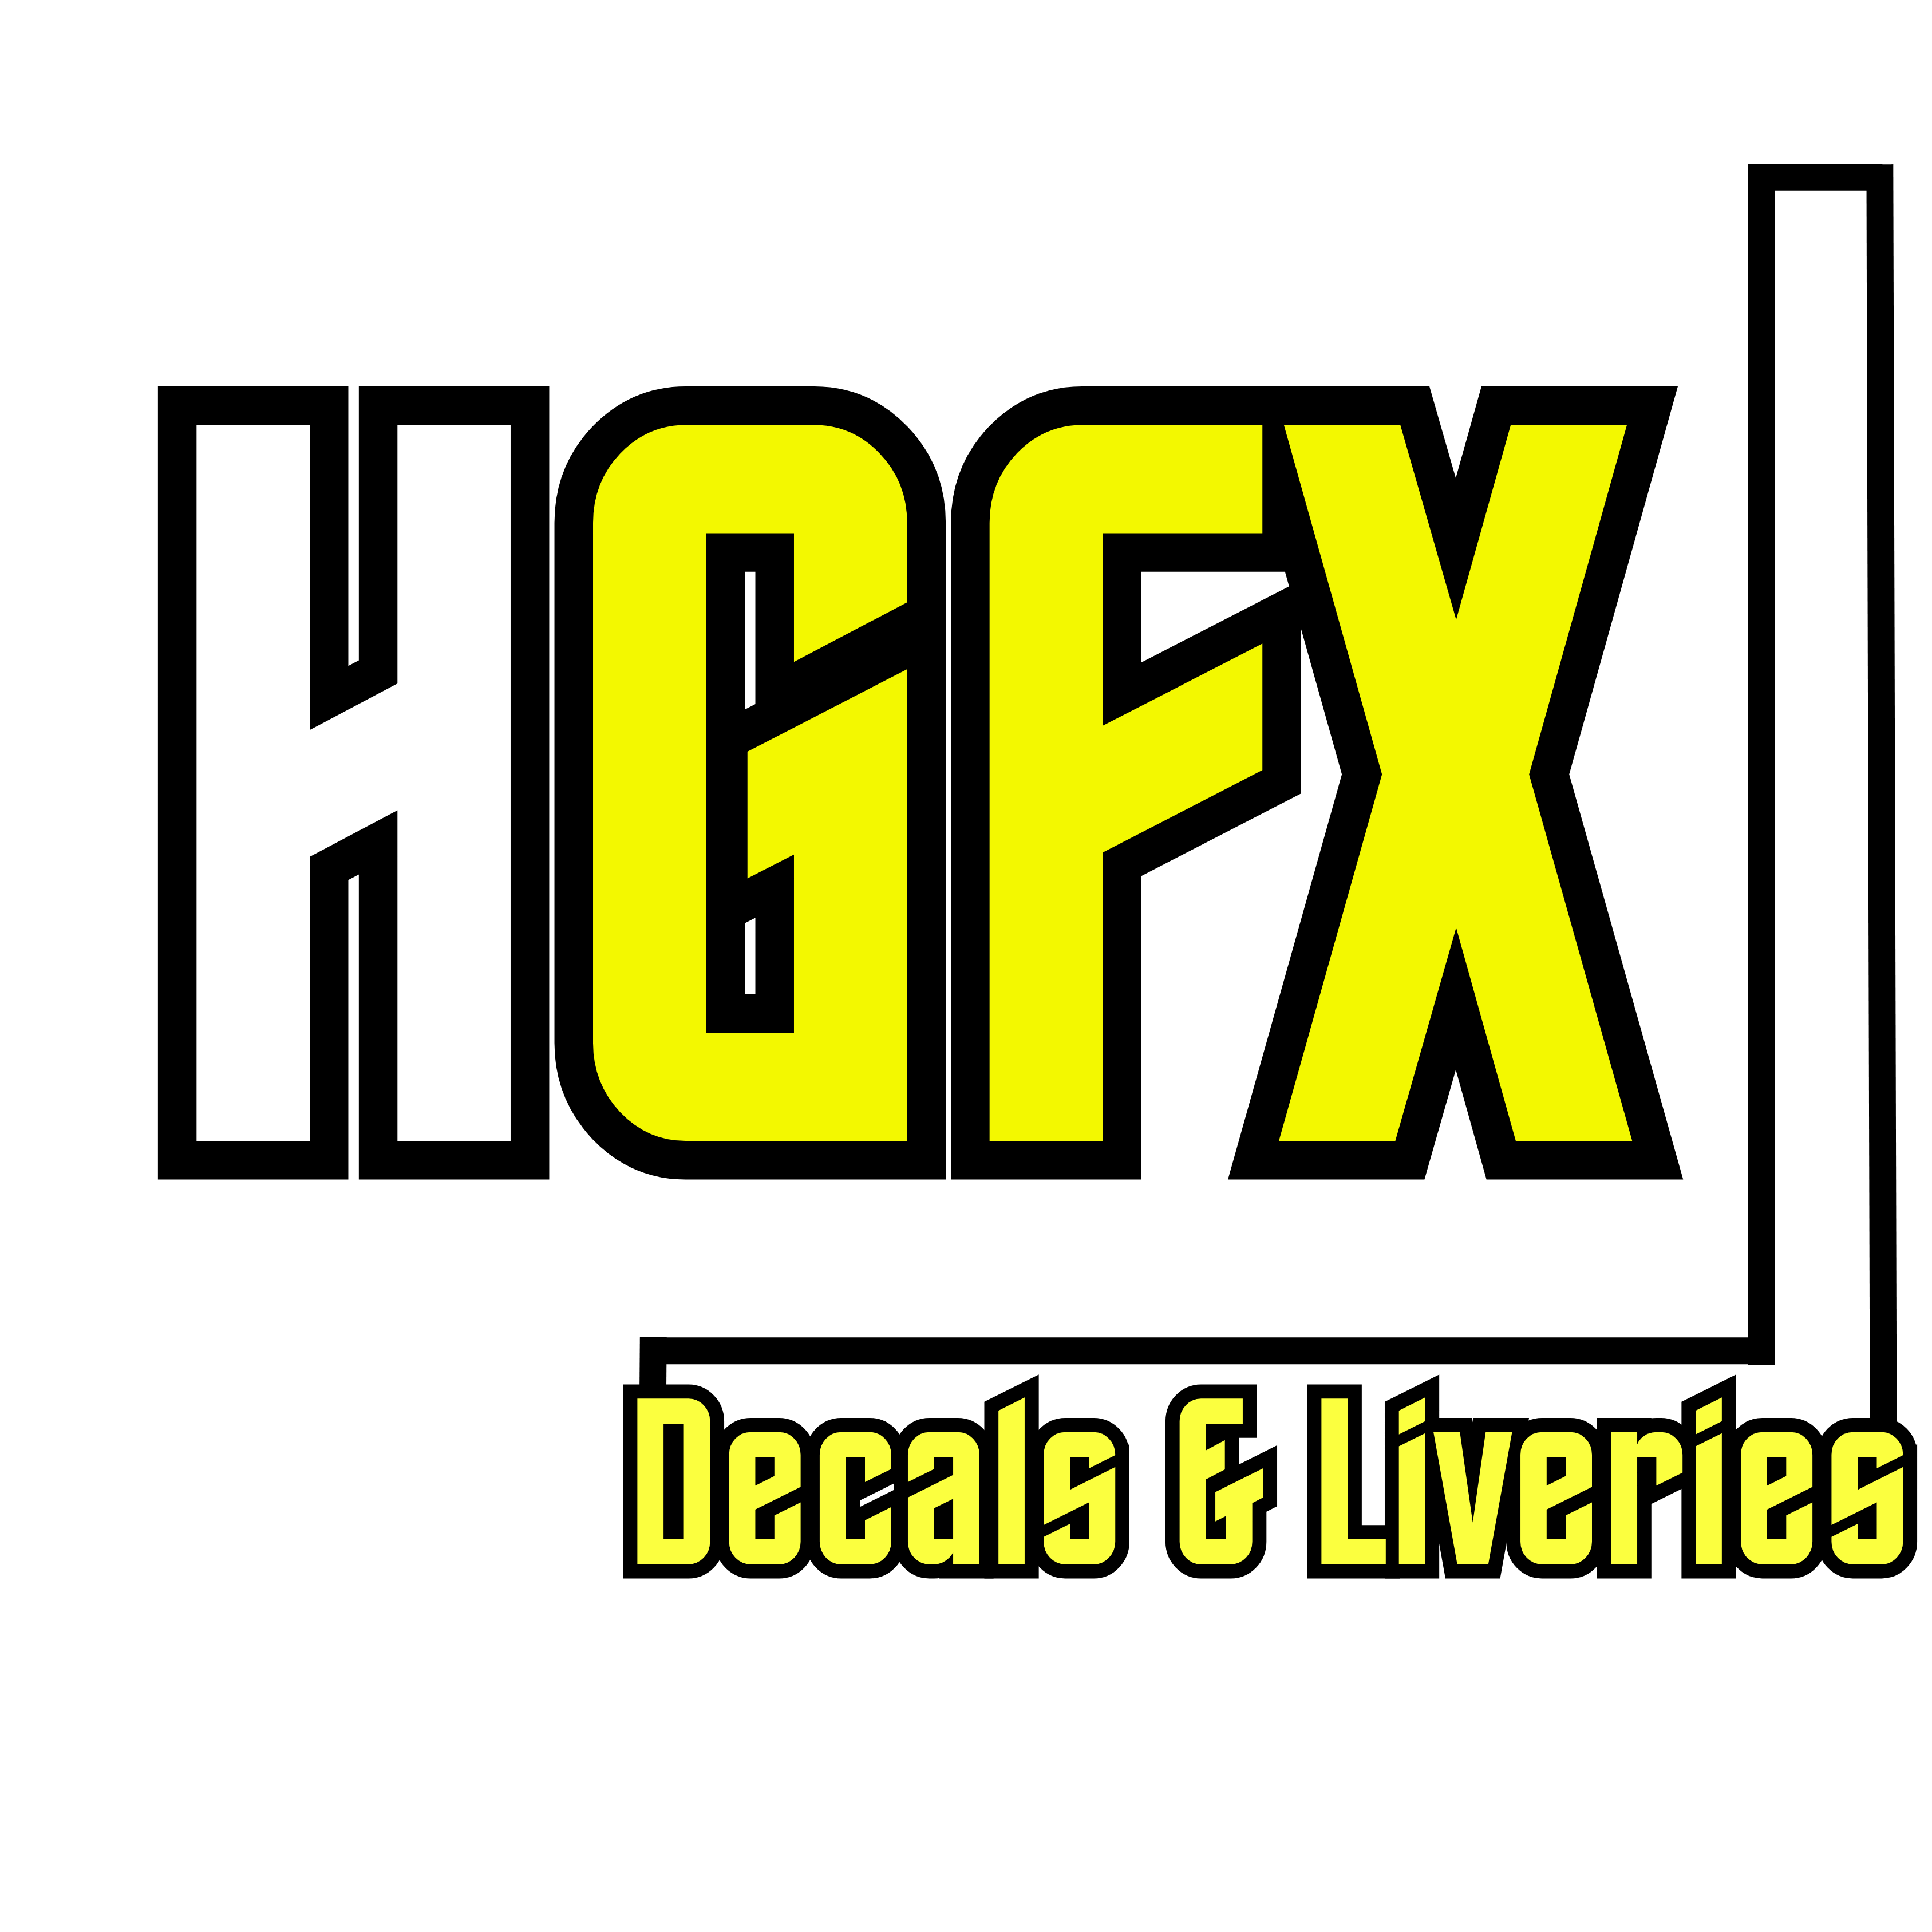 HGFX Decals en Liveries